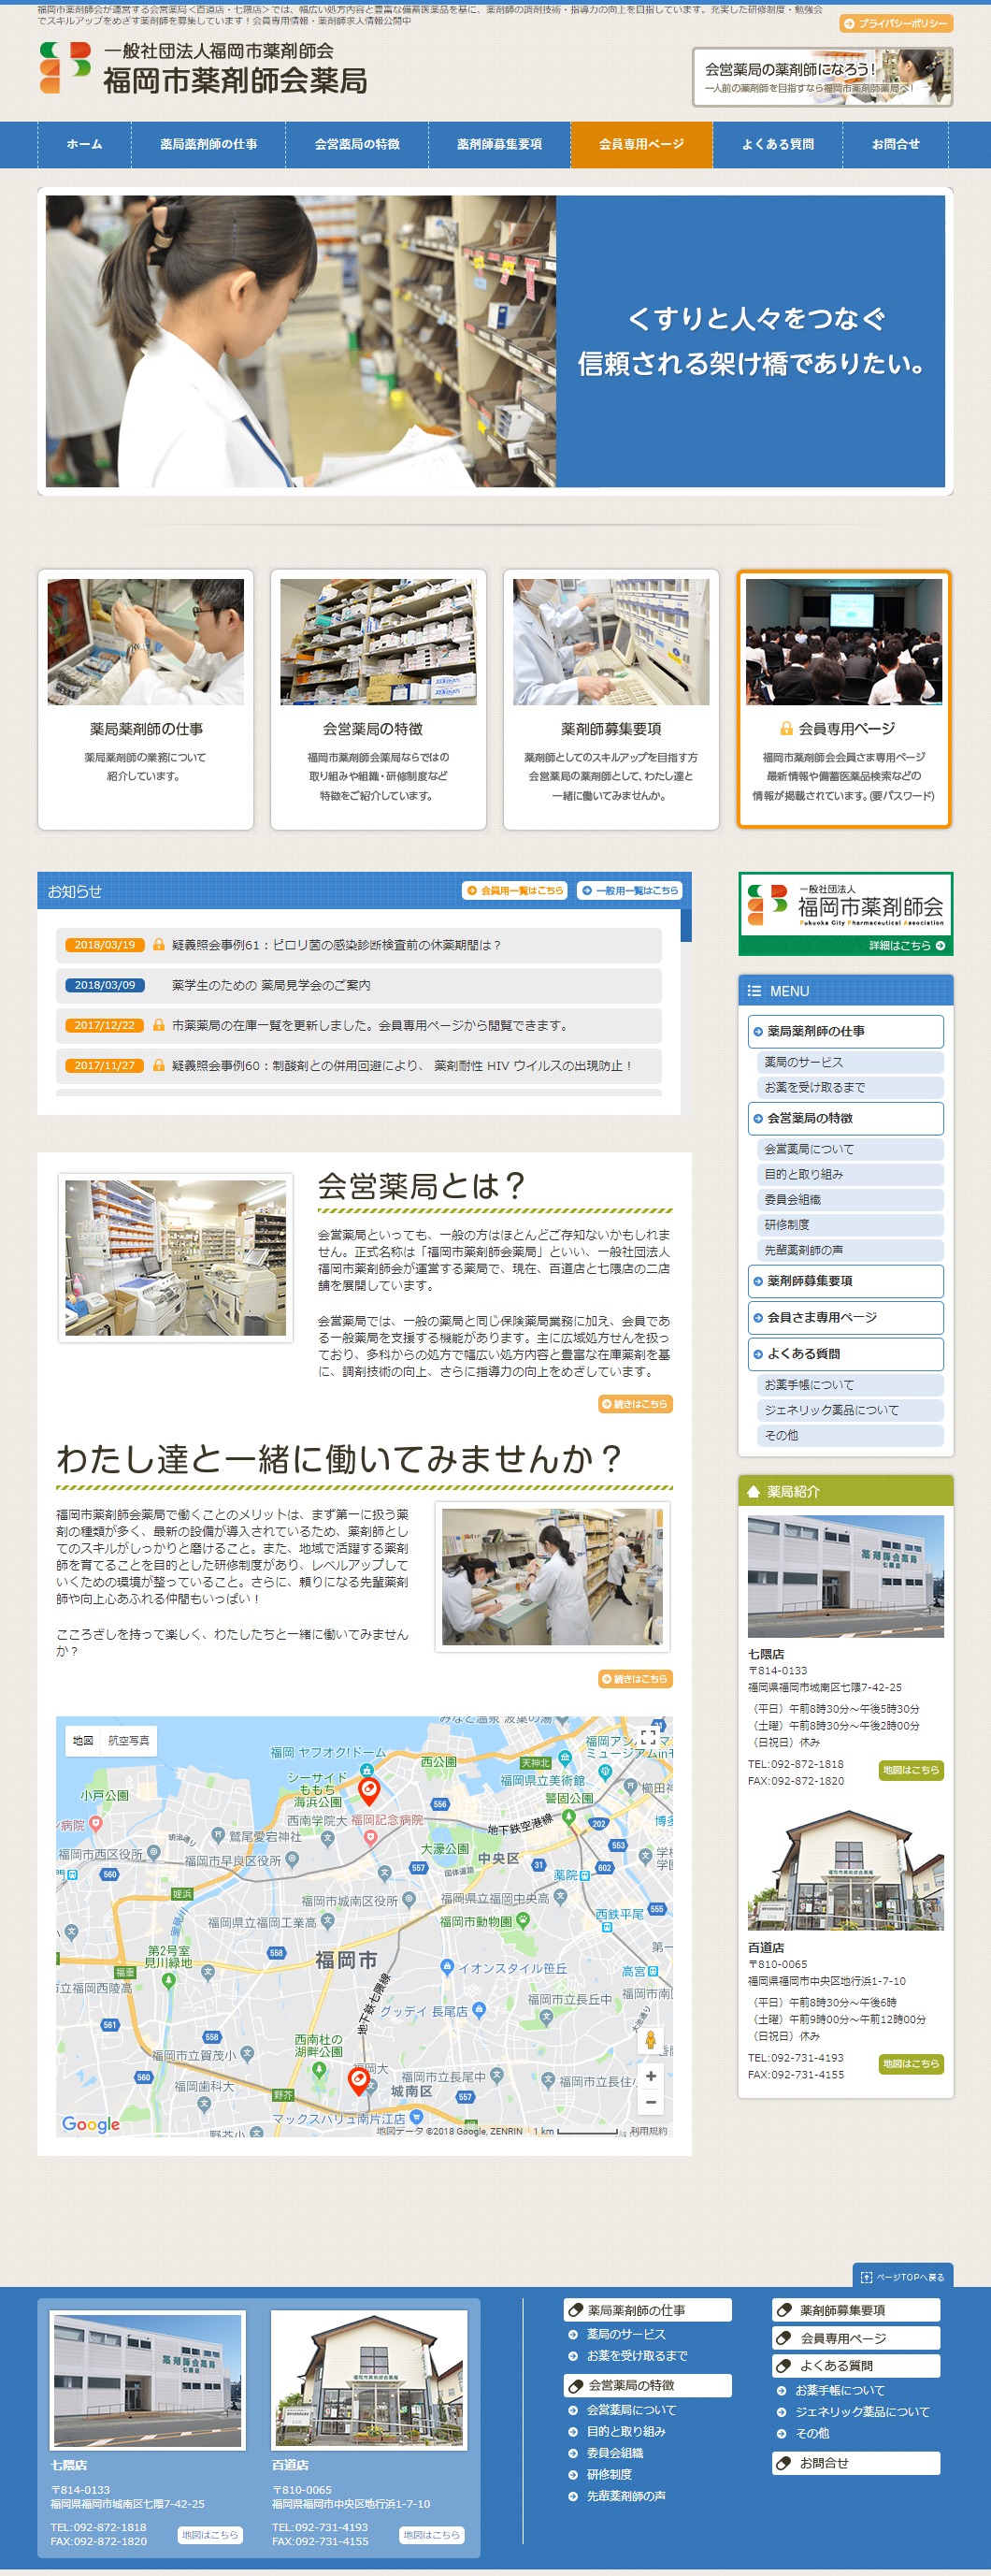 福岡市薬剤師会薬局様ホームページ制作実績 デスクトップイメージ